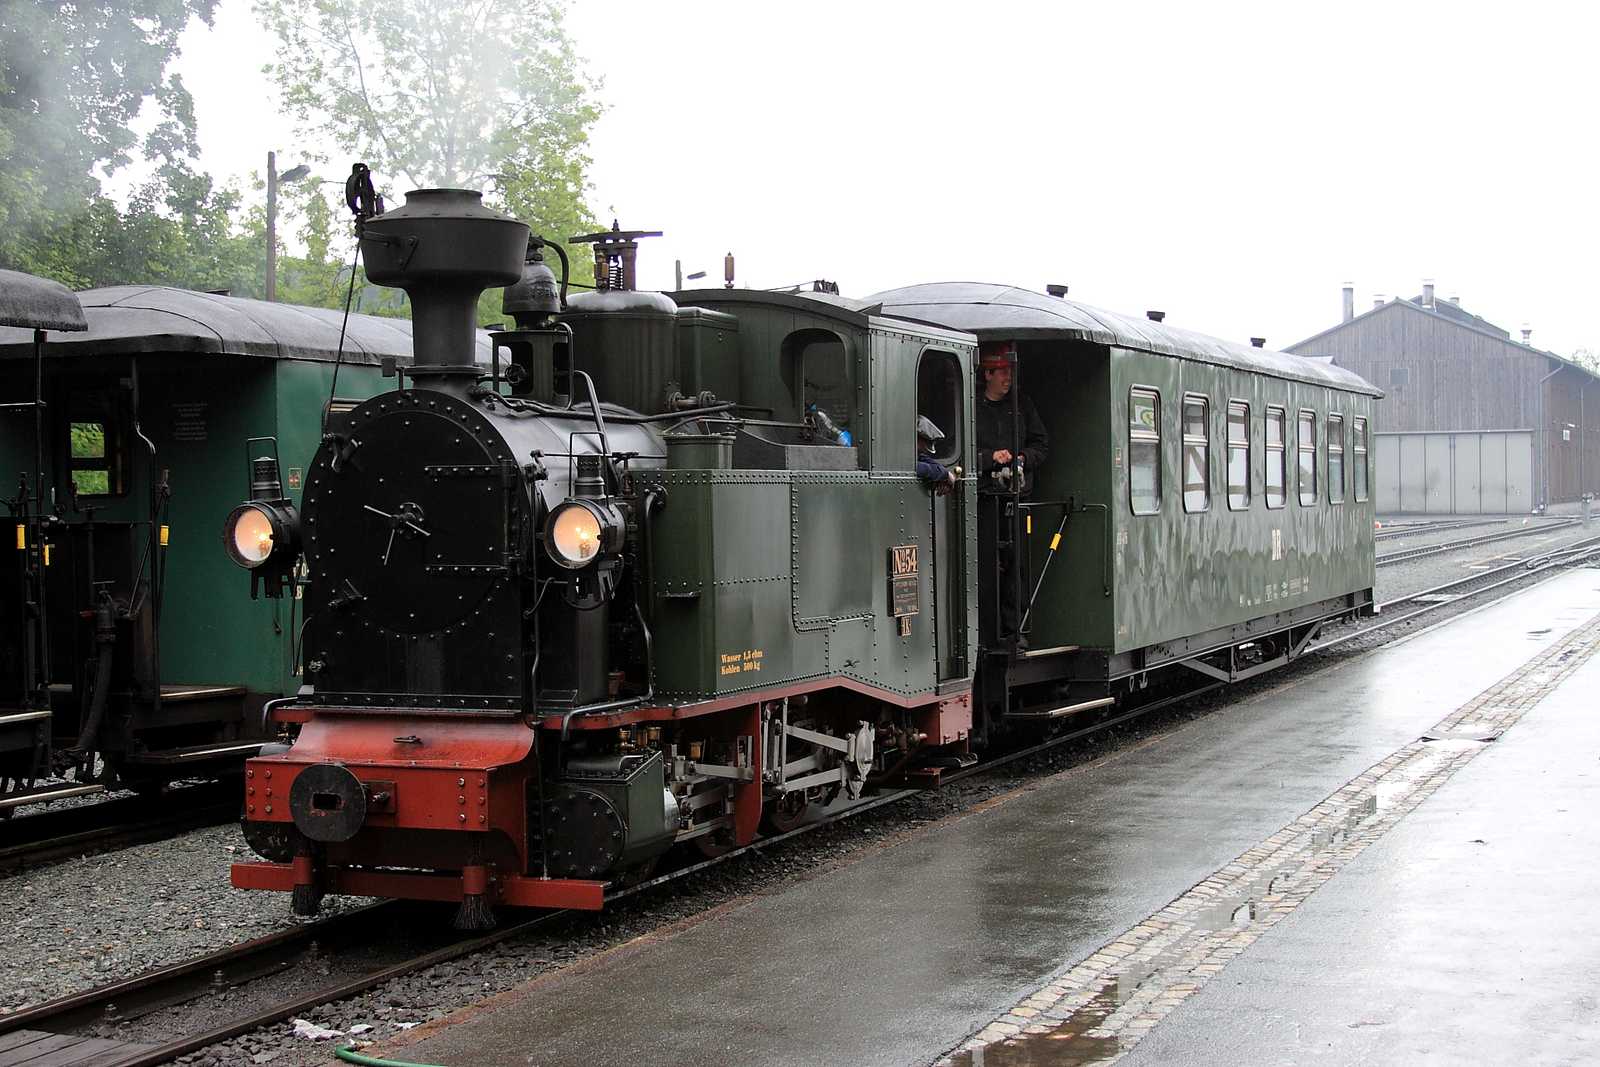 Wahrscheinlich seit über 100 Jahren der erste von einer I K gezogene Reisezug im Bahnhof Oberwiesenthal.